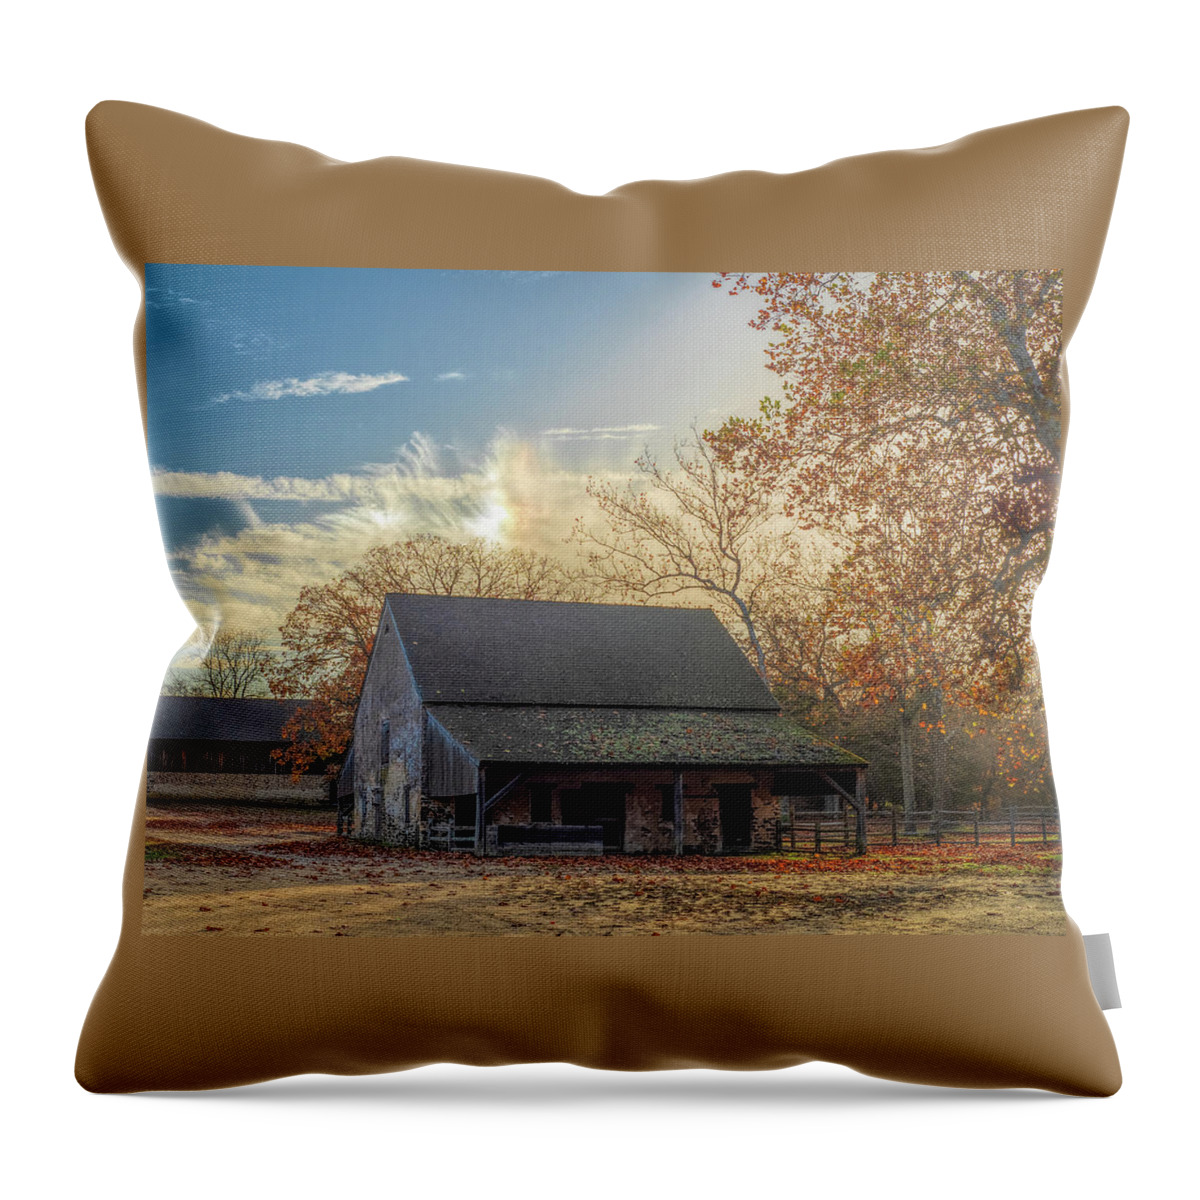 Barn Throw Pillow featuring the photograph Sundog Rainbow Over The Horse Barn by Kristia Adams